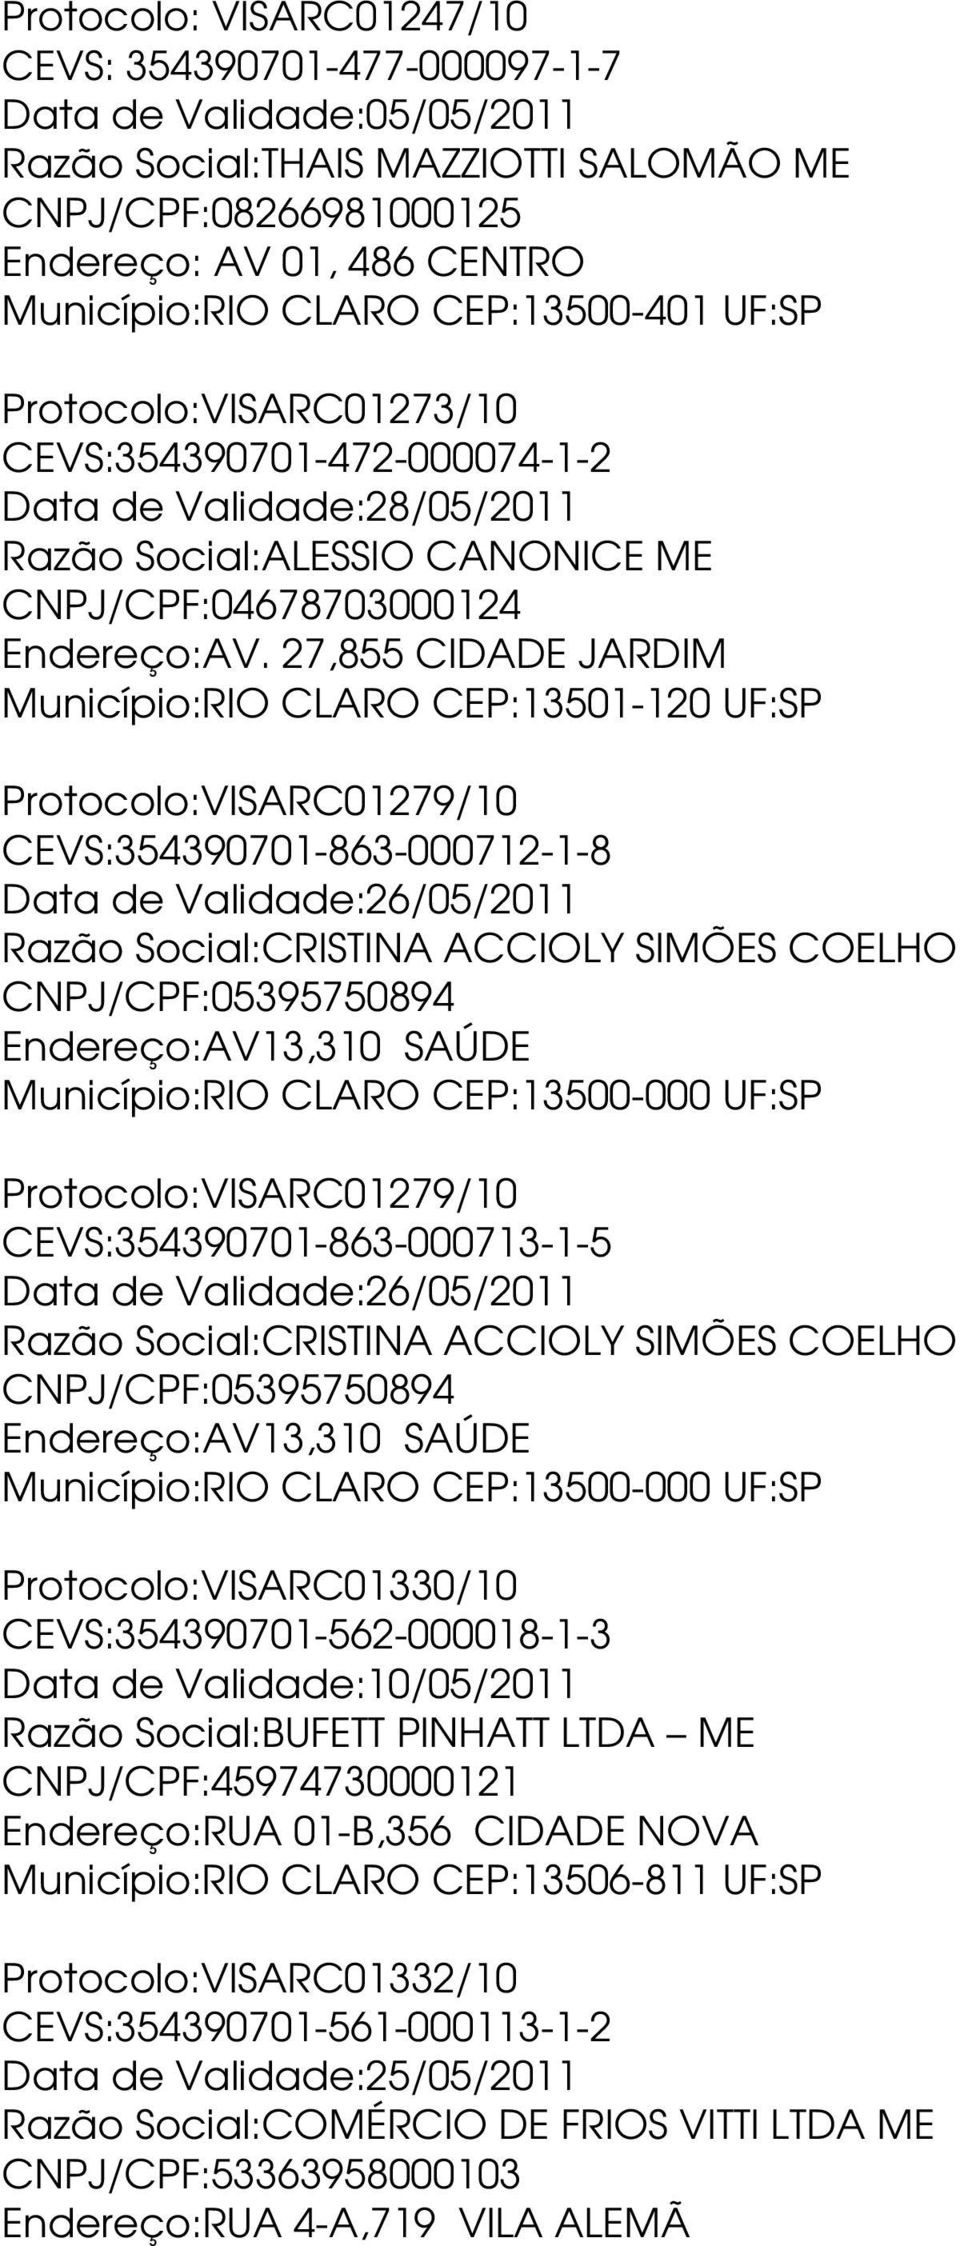 27,855 CIDADE JARDIM Município:RIO CLARO CEP:13501-120 UF:SP Protocolo:VISARC01279/10 CEVS:354390701-863-000712-1-8 Data de Validade:26/05/2011 Razão Social:CRISTINA ACCIOLY SIMÕES COELHO